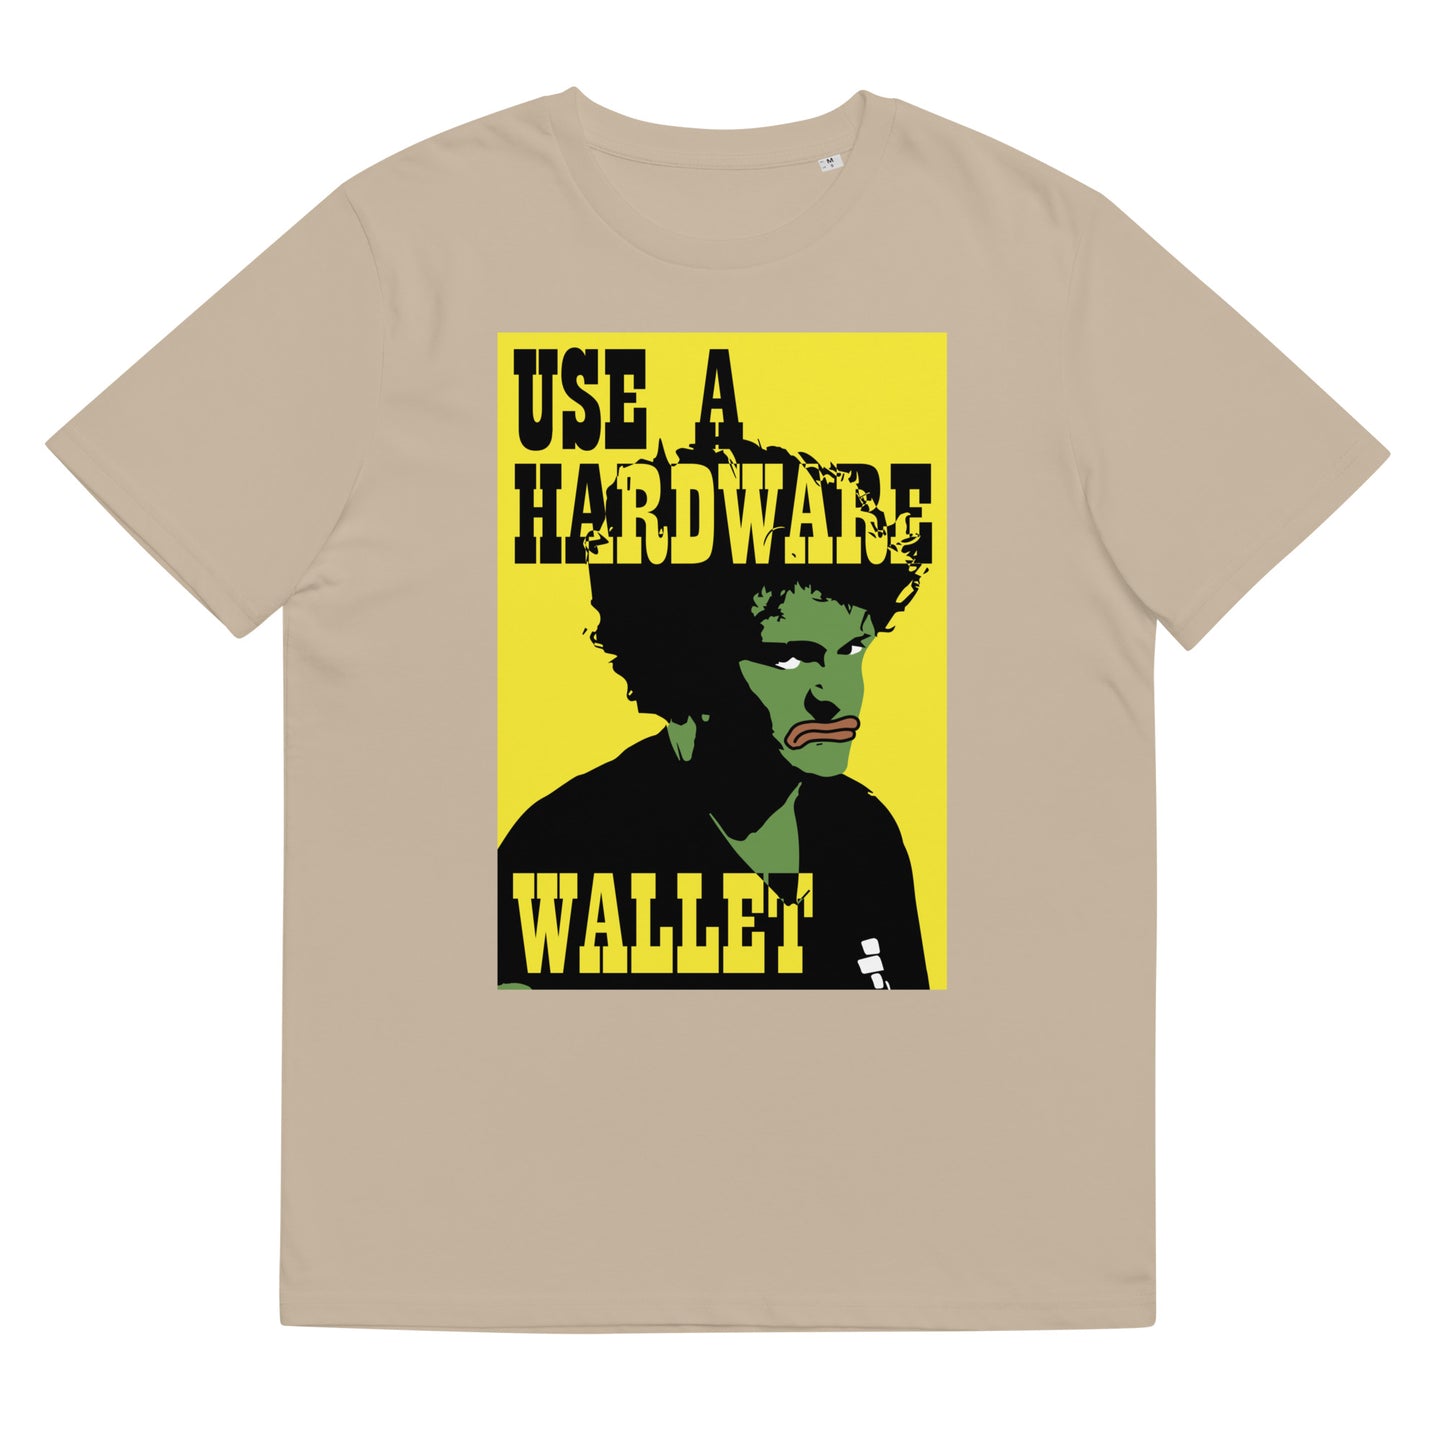 use-hardware-wallet-t-shirt-desert-dust